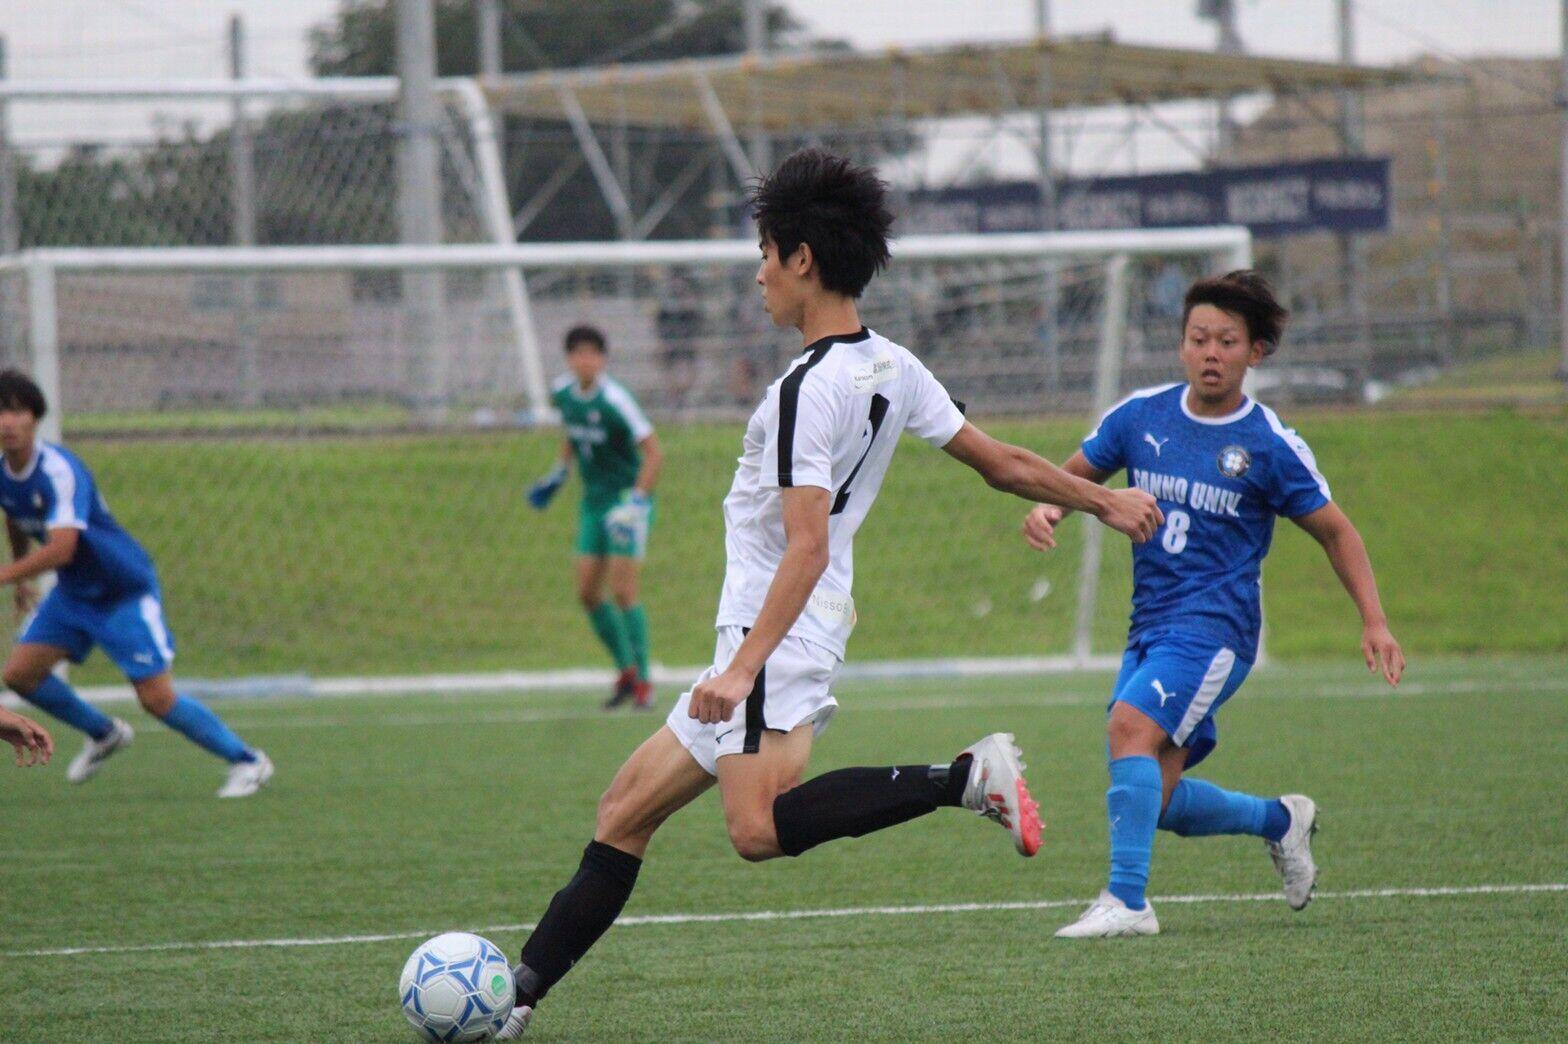 https://football.ku-sports.jp/blog/photoreport/images/31bd7bcdb7cdcdd8d636703f5b15fa2079f69eb0.jpg